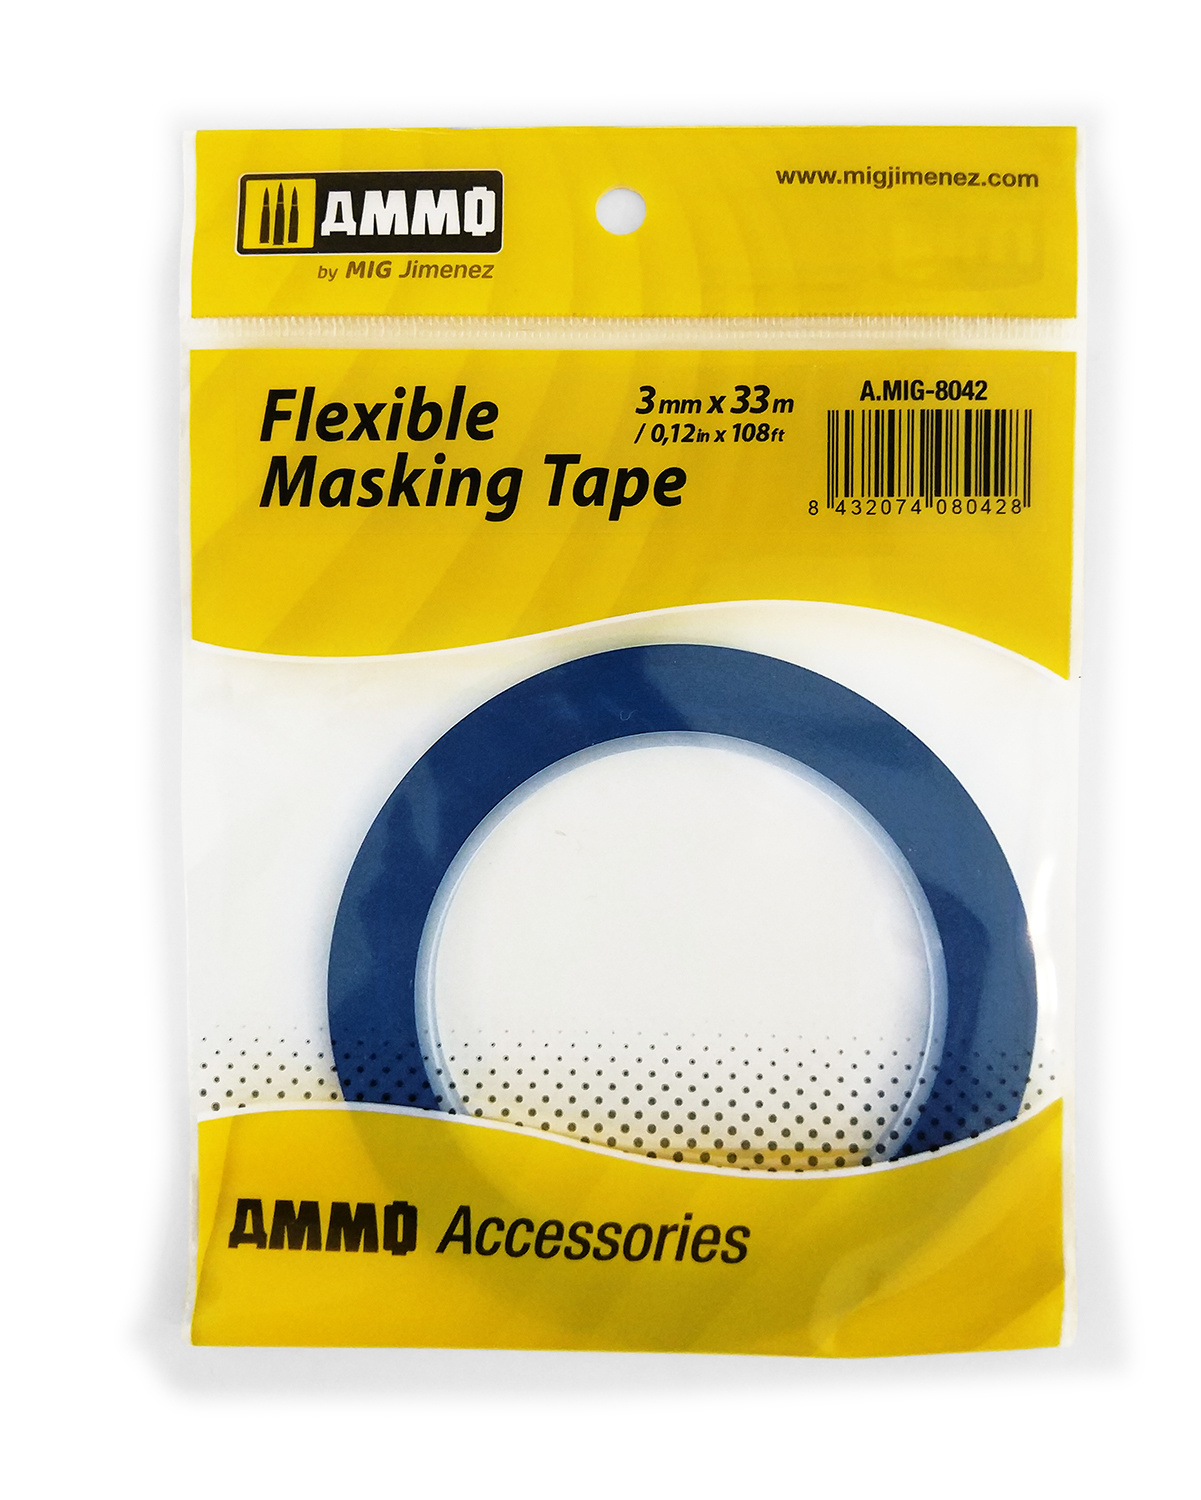 Ammo by Mig Jimenez Flexible Masking Tape (3mm X 33m) - Ammo by Mig Jimenez - A.MIG-8042